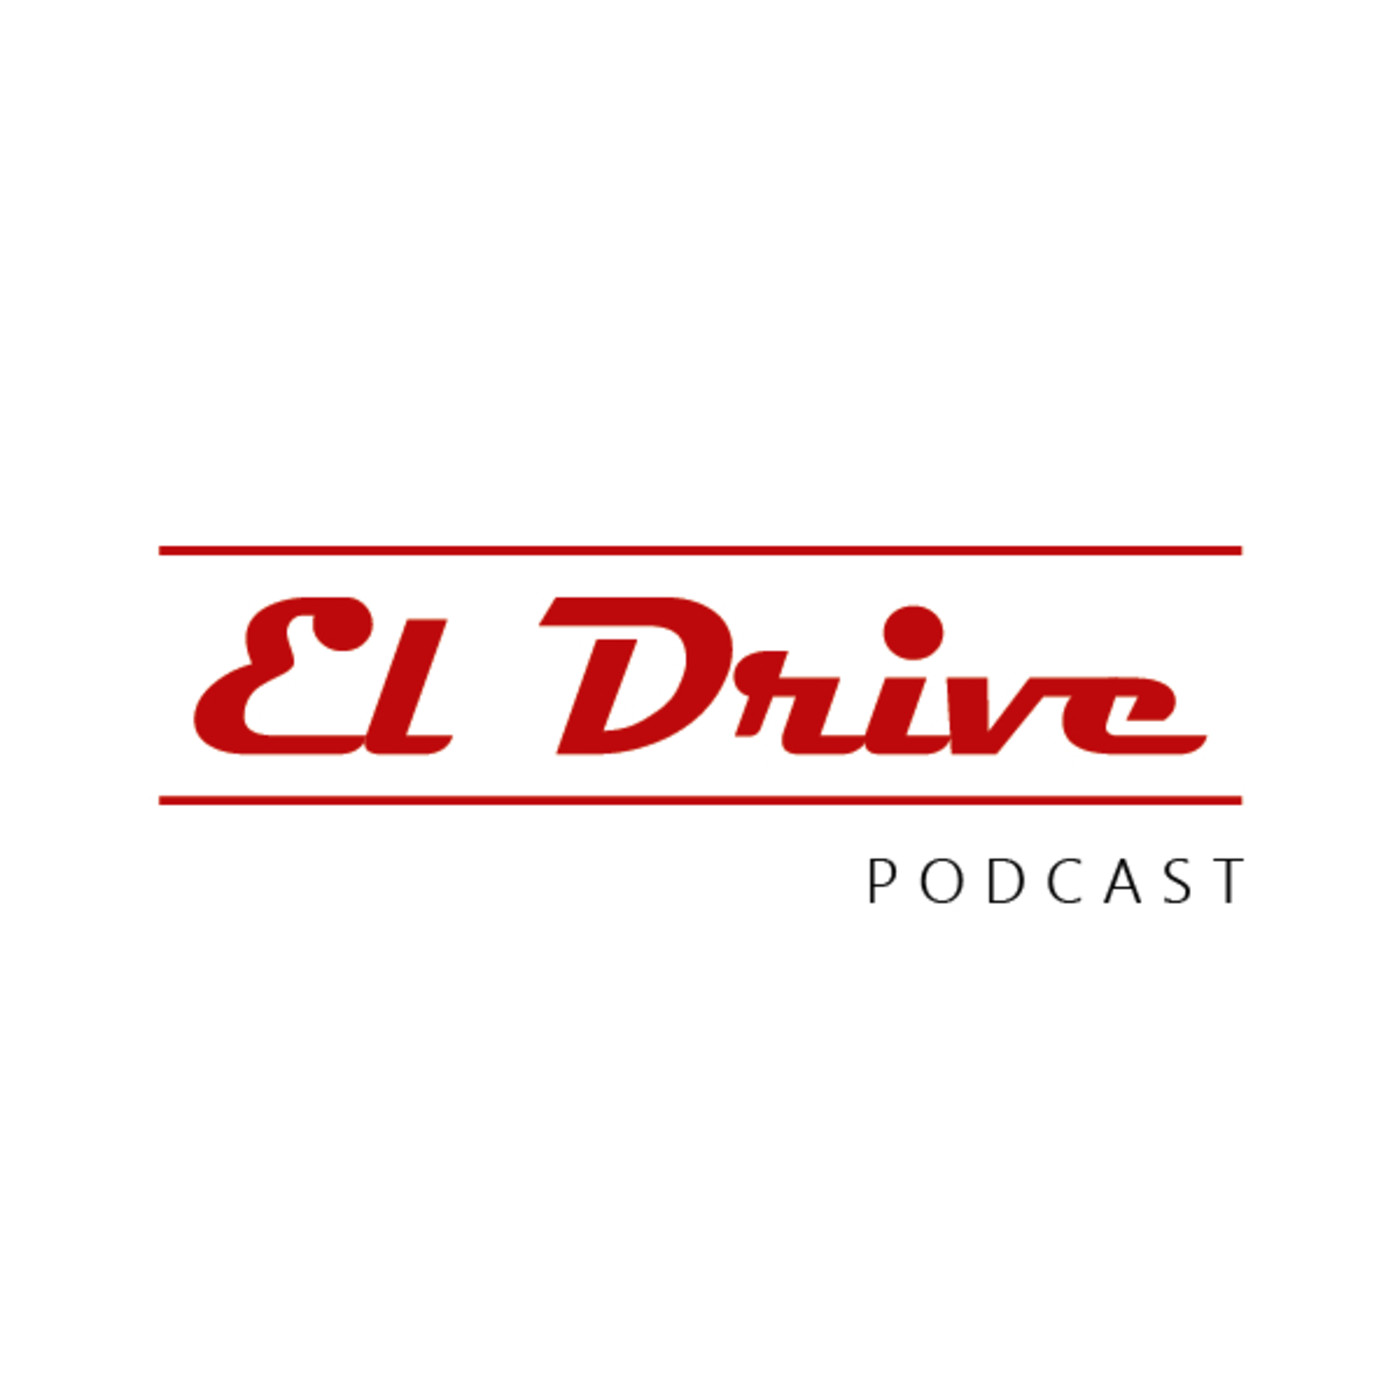 El Drive